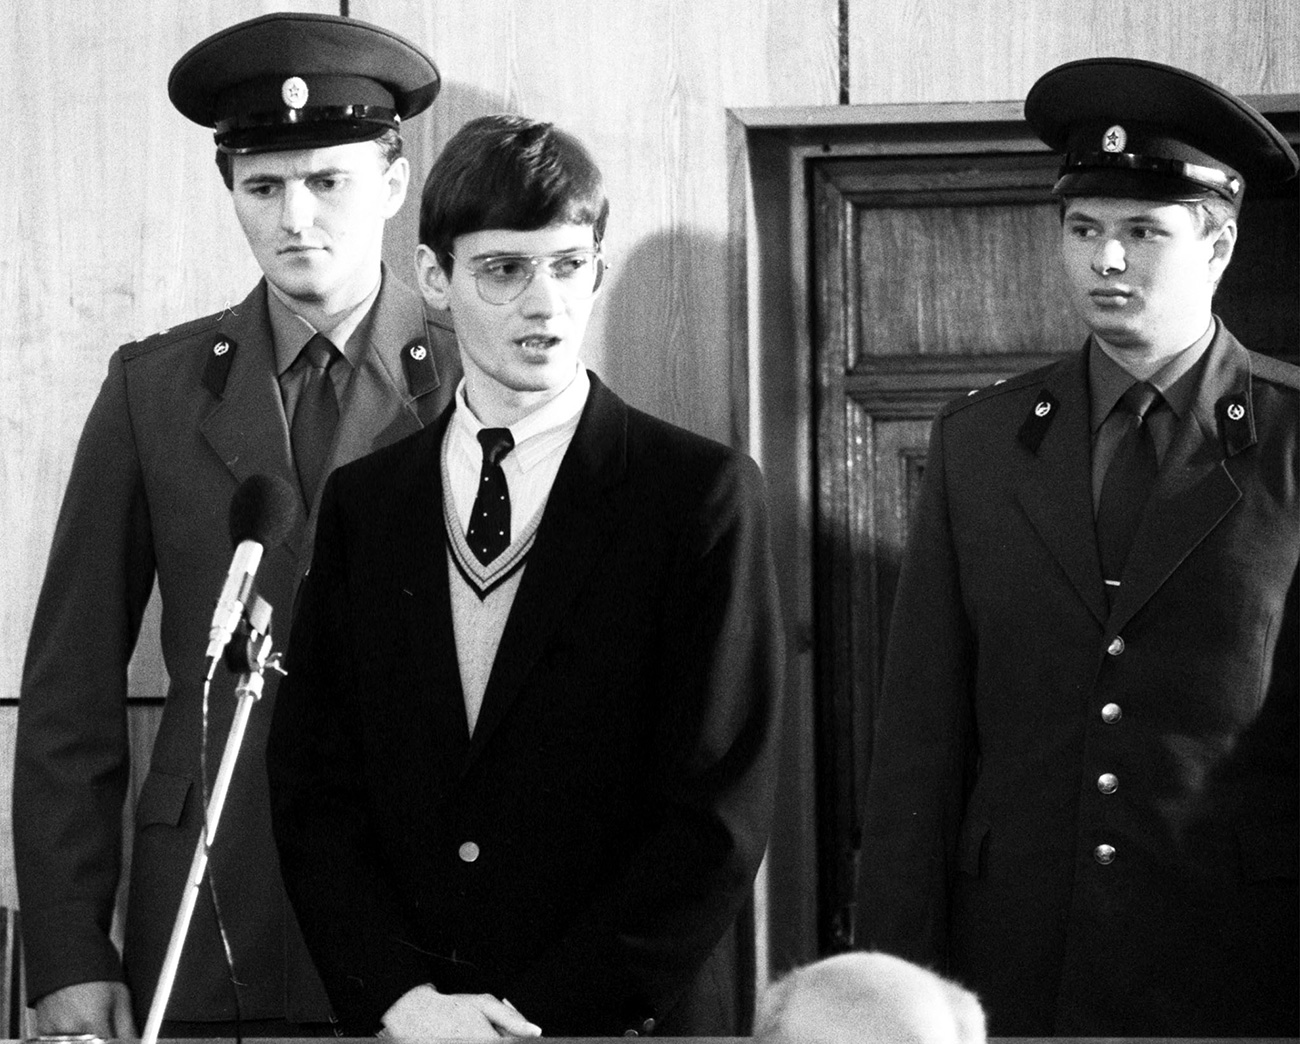 Немачки аматерски пилот Матијас Руст, у средини, на суђењу због незаконитог слетања у близини Црвеног трга у Москви 1987. Извор: Николај Малишев/ Александар Конков/ТАСС